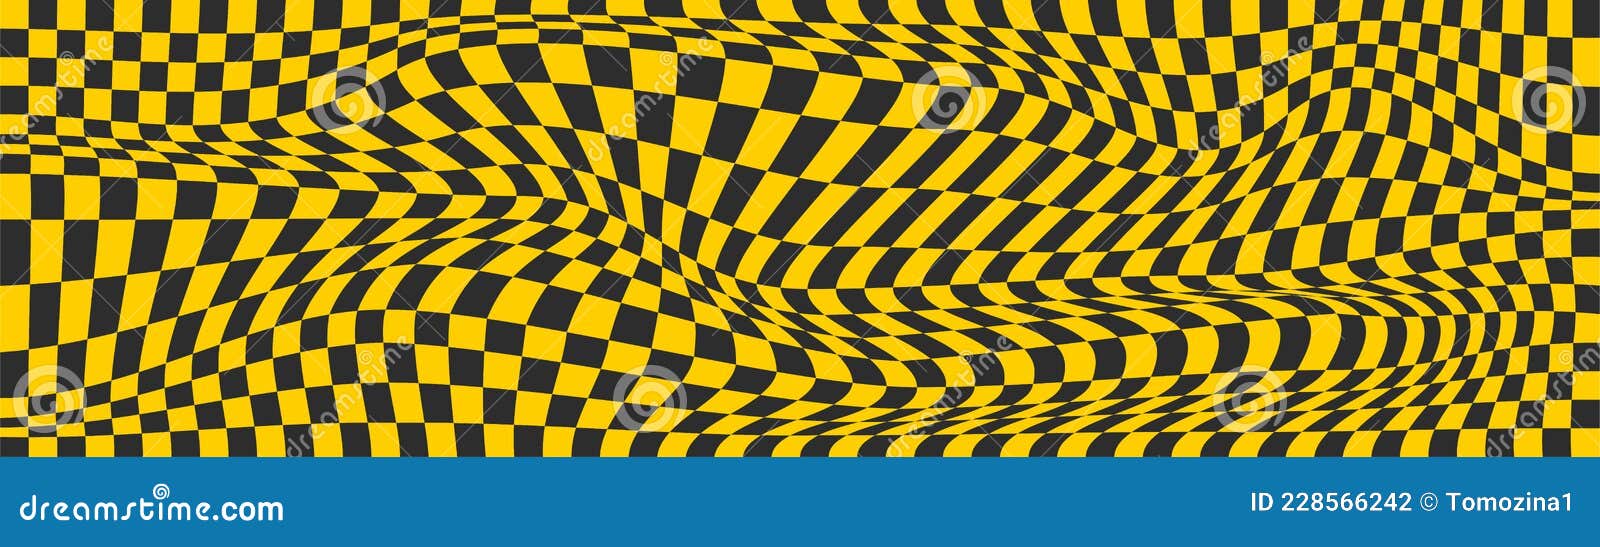 amarelo Preto quadrado xadrez, Verifica bandeira padrão, rede